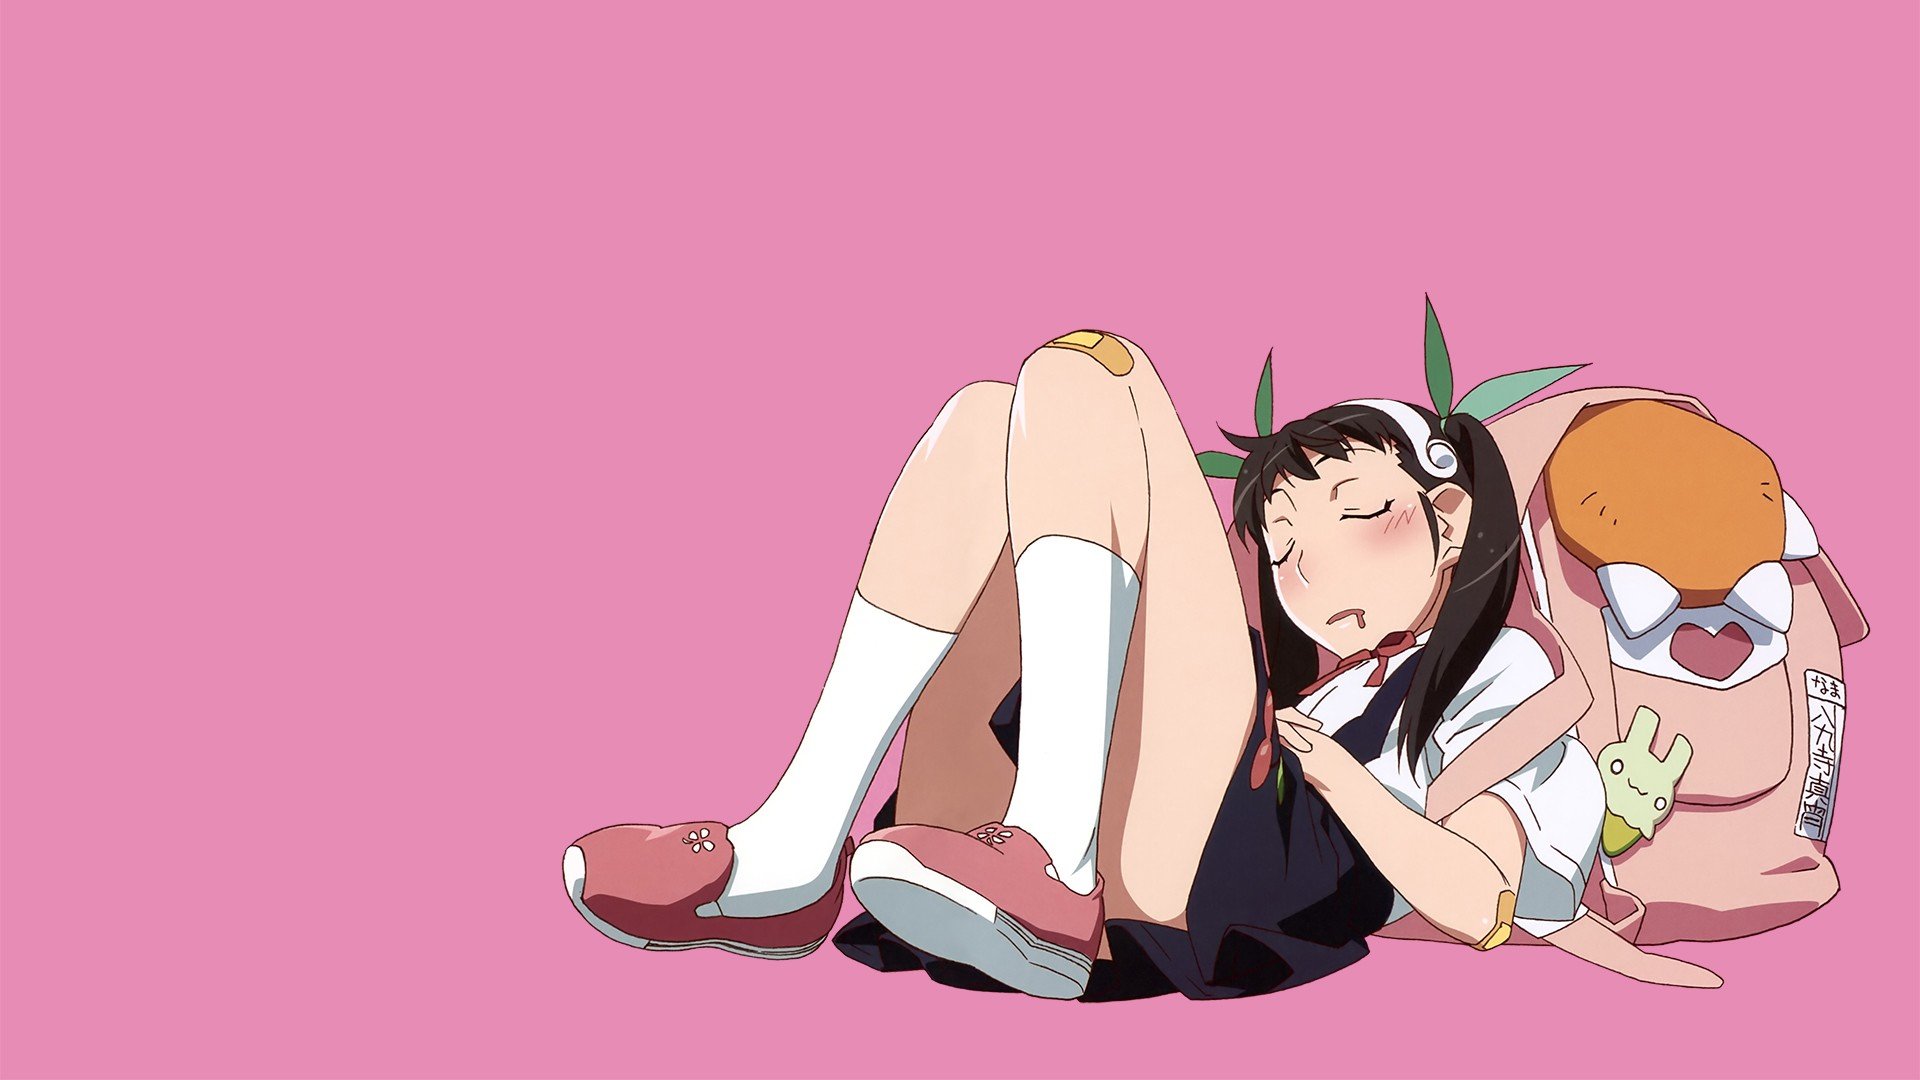 Monogatari Series, Hachikuji Mayoi, Anime girls, Pink background Wallpaper